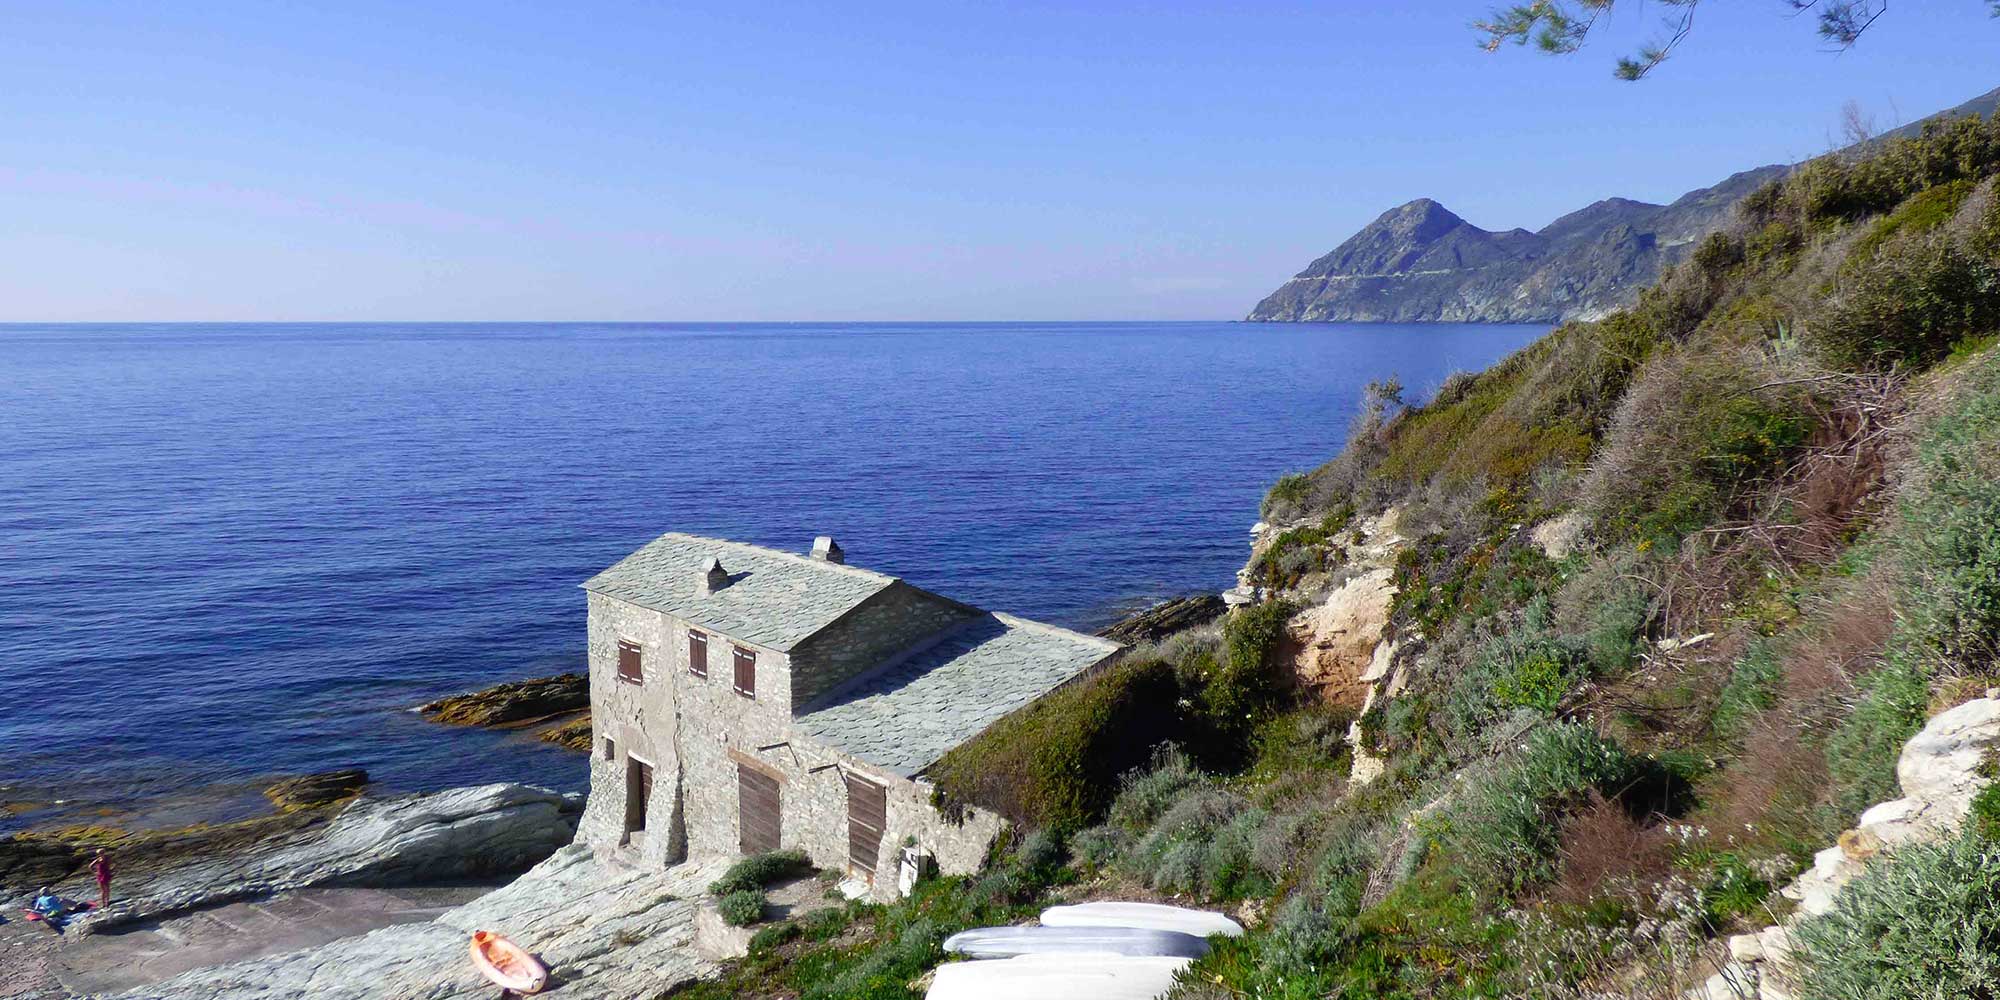 Locations de vacances pour 10 à 13 personnes à Marinca (Canari) dans le Cap Corse